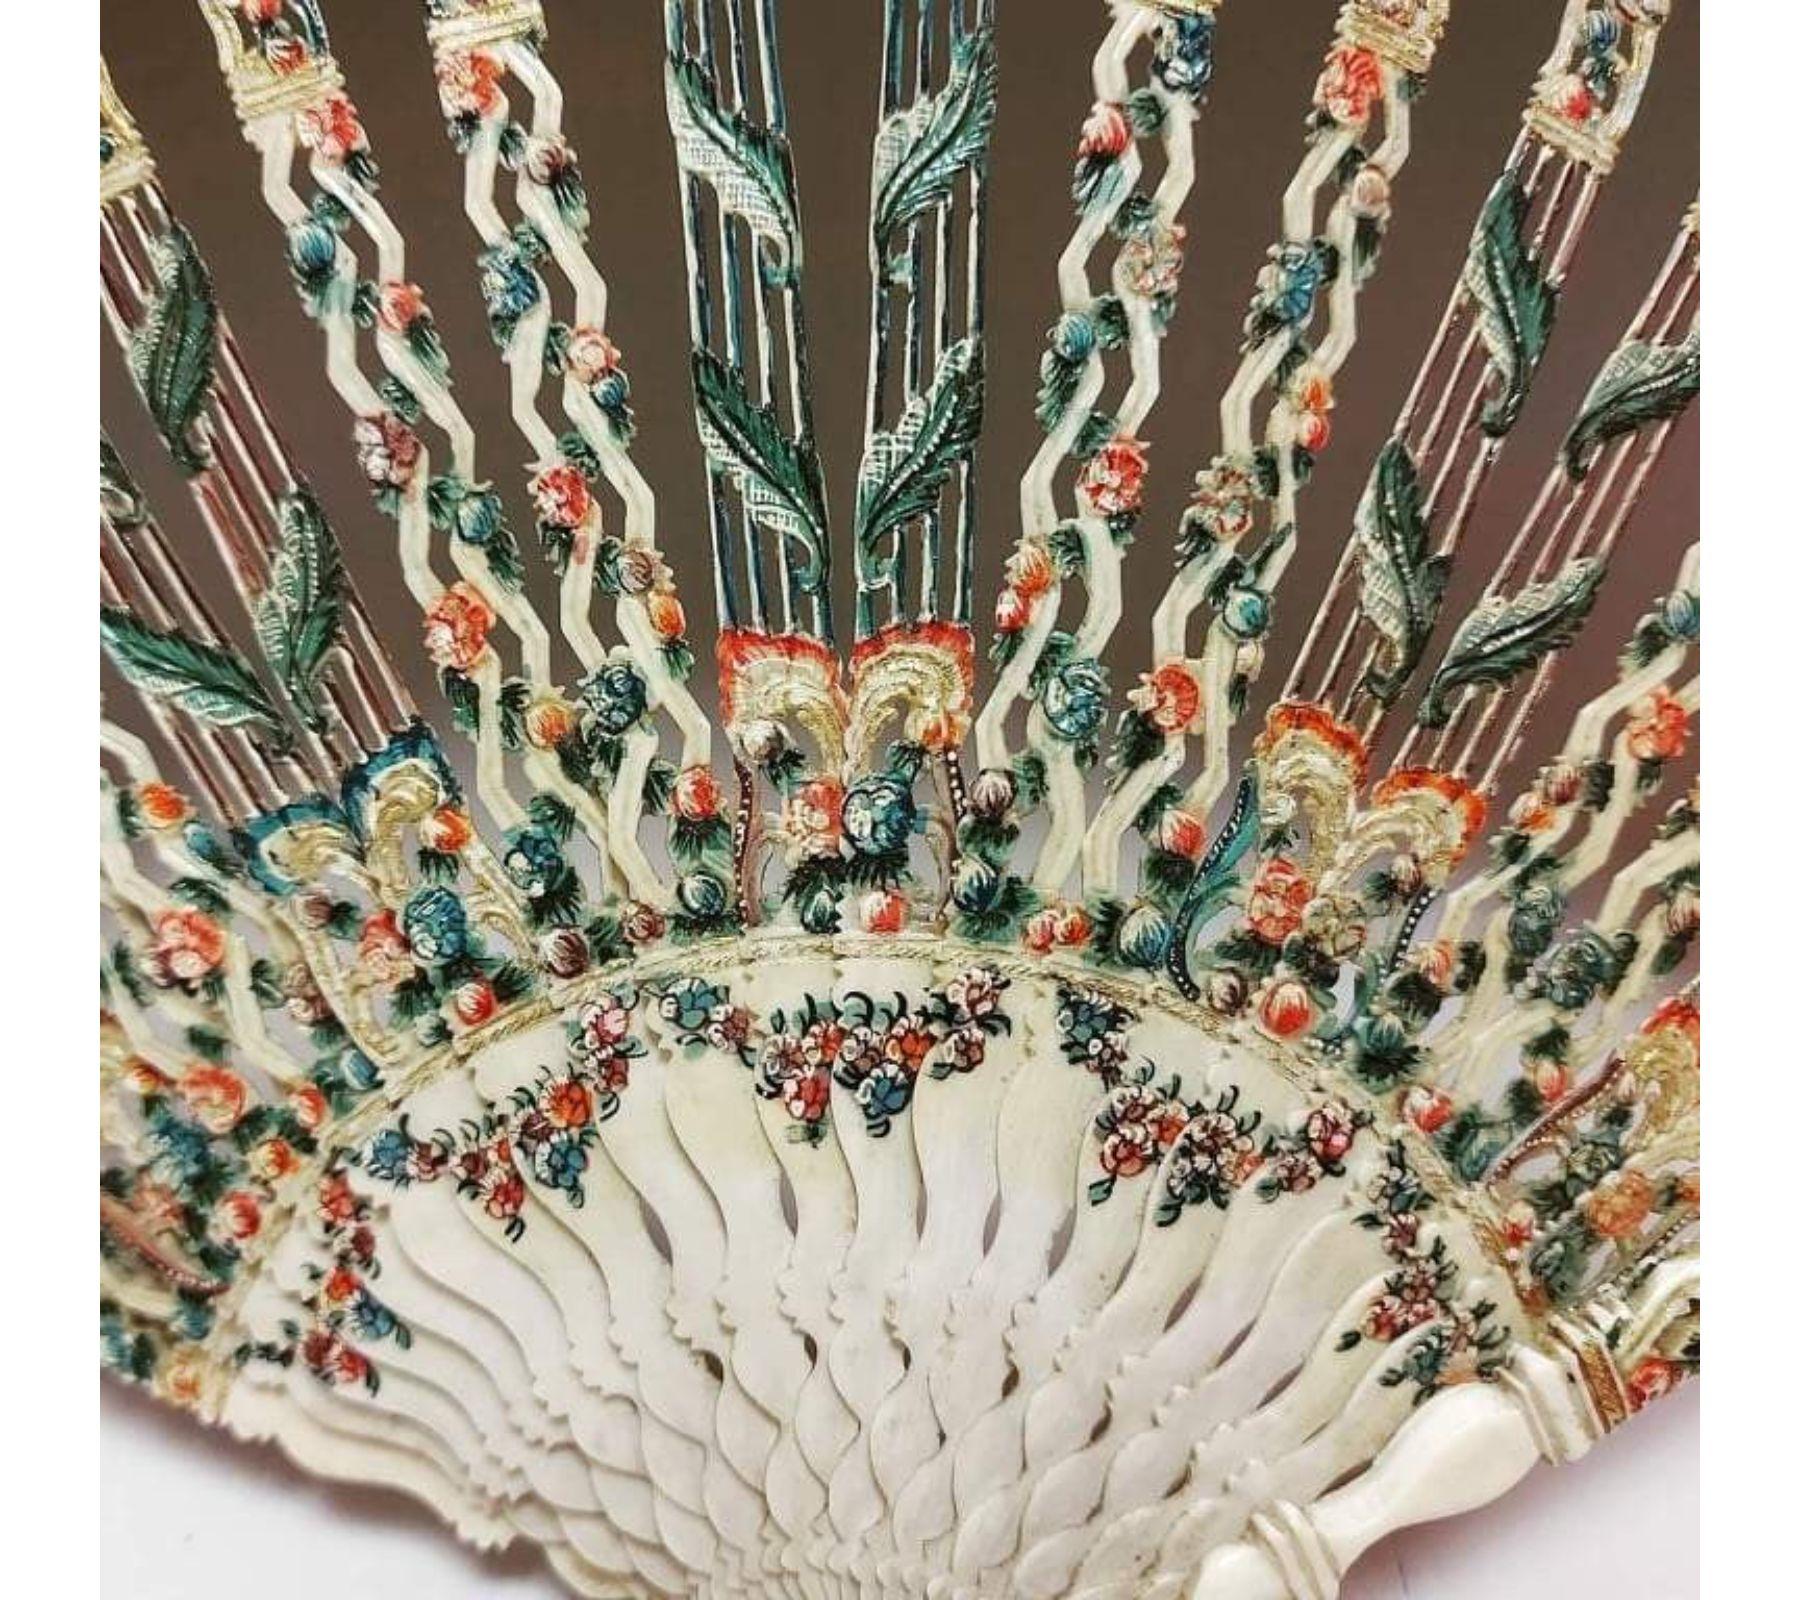 Éventail époque XVIII e. Rare monture en zigzag et décors floraux. Vernis Martin sur ivoire. Feuille peinte en vélin figurant une rare scène de jeu de cerf volant.